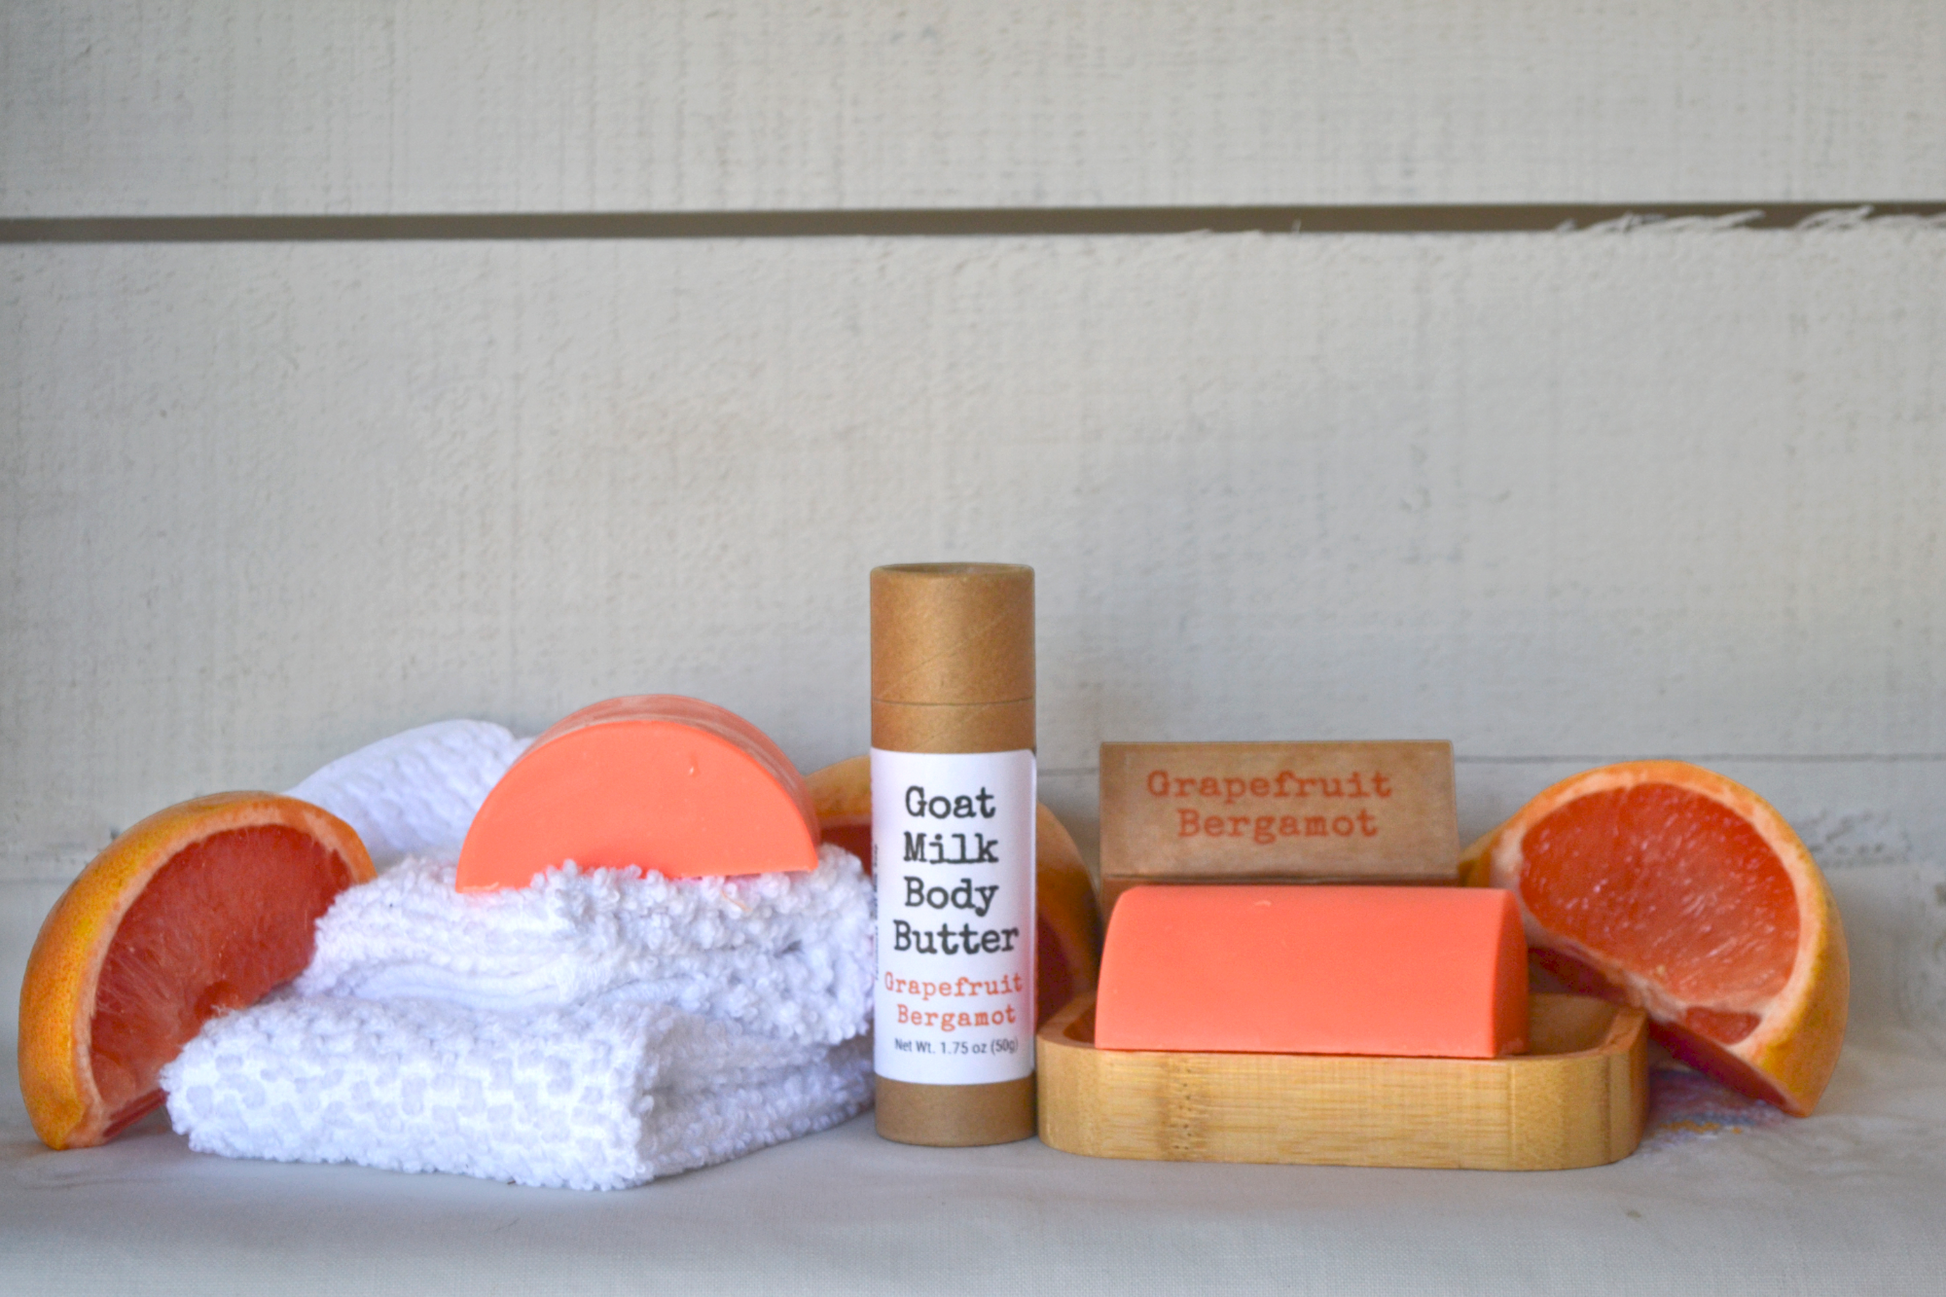 Grapefruit Bergamot Goat Milk Body Butter Stick - Summer Series '24 Body Butter Sticks Jax Soap Company   